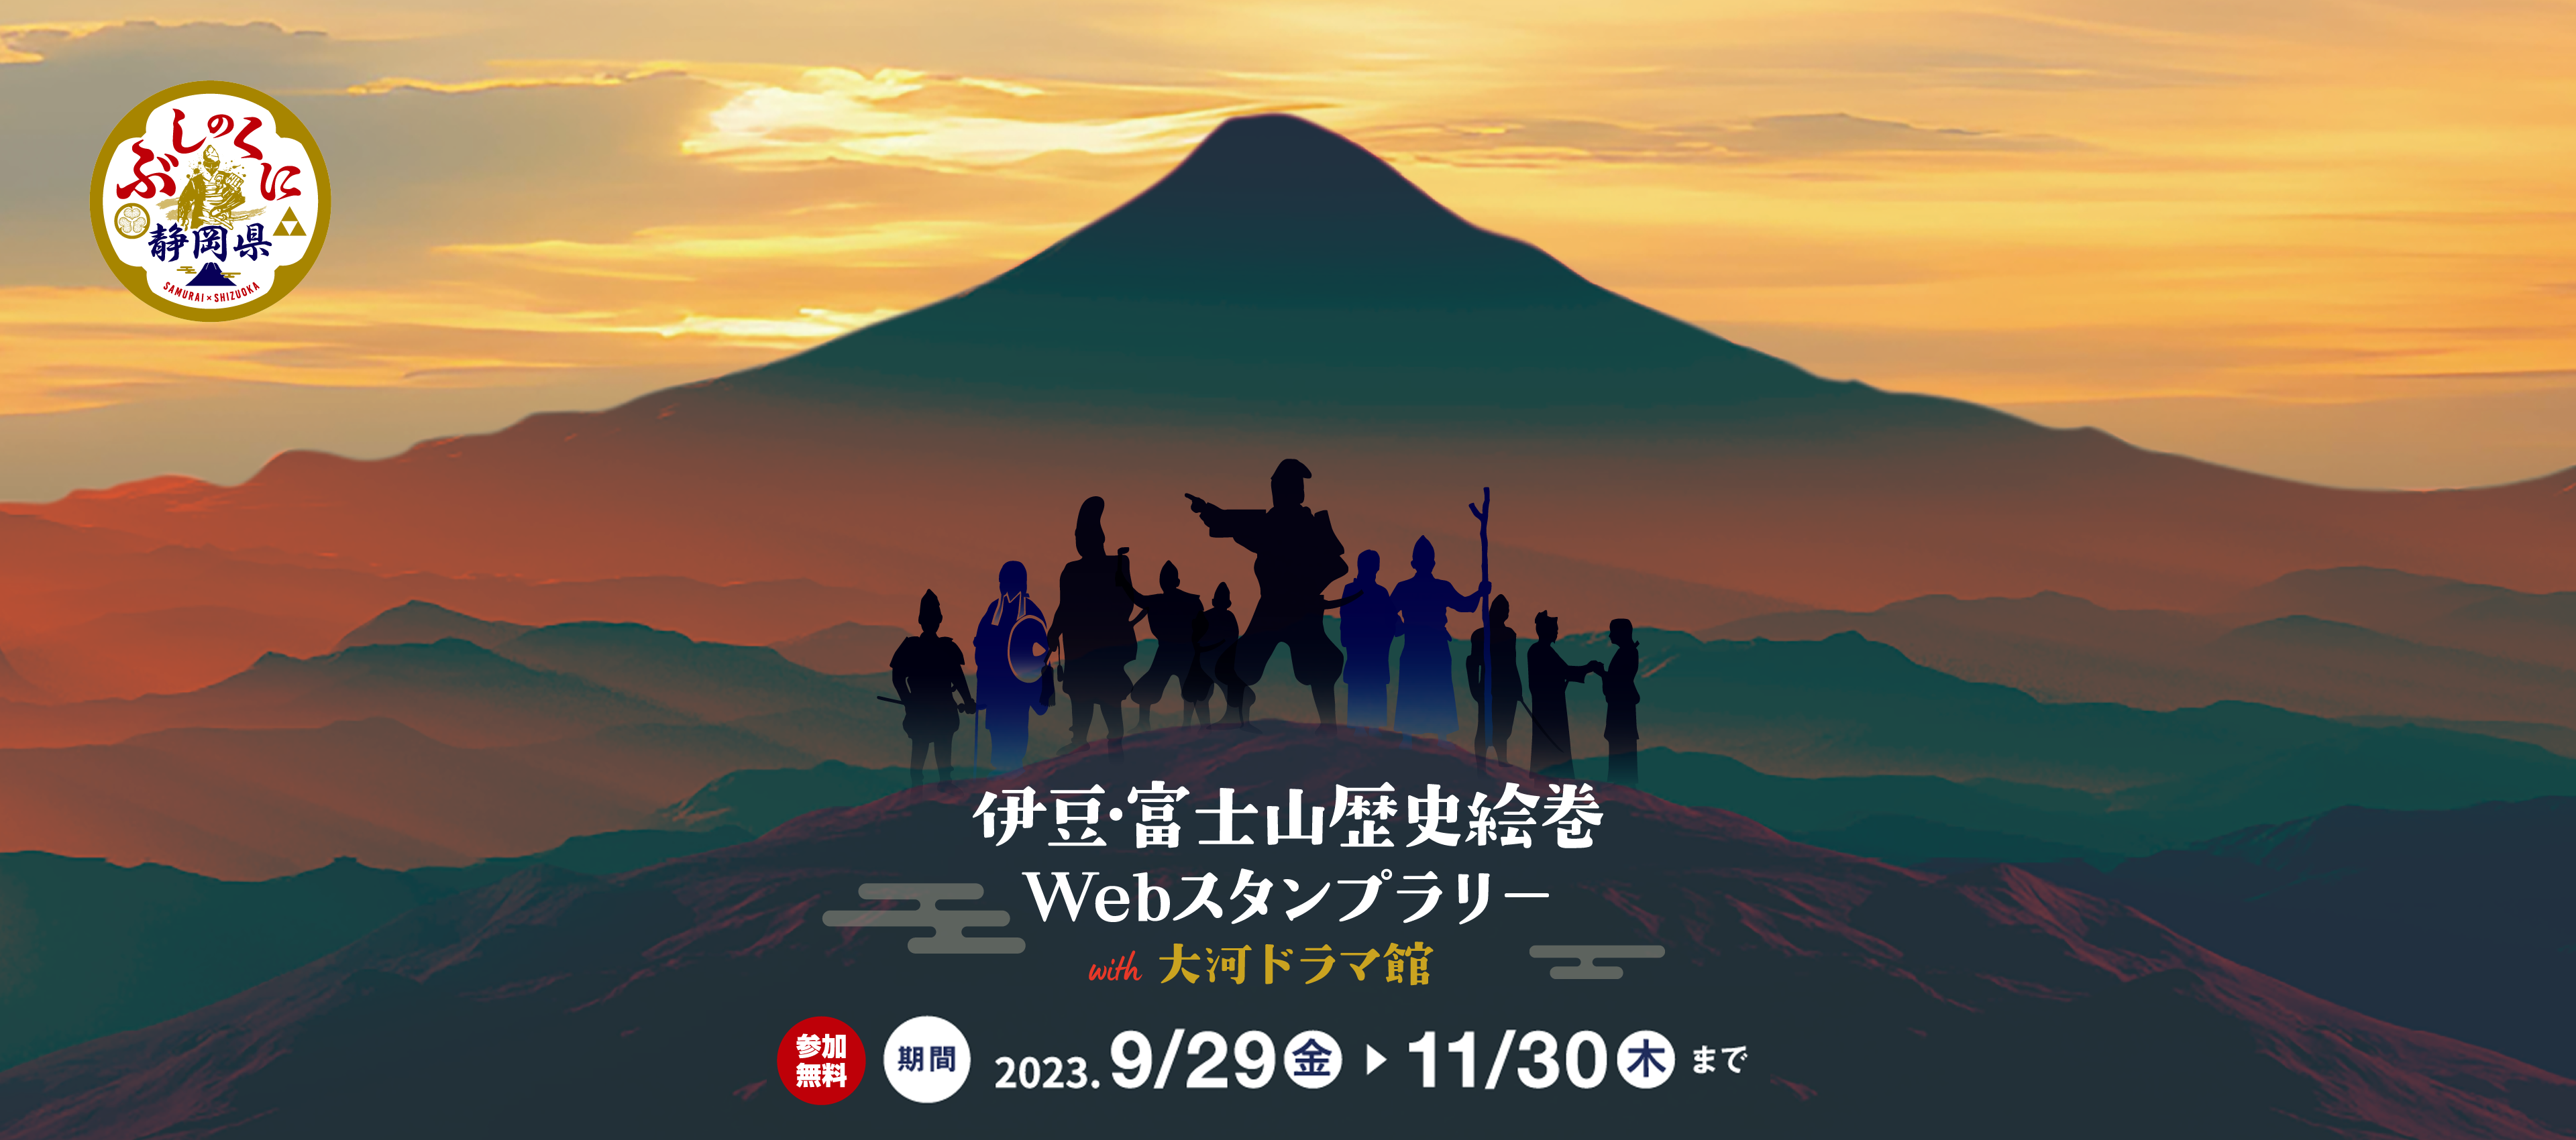 伊豆・富士山歴史絵巻Webスタンプラリー